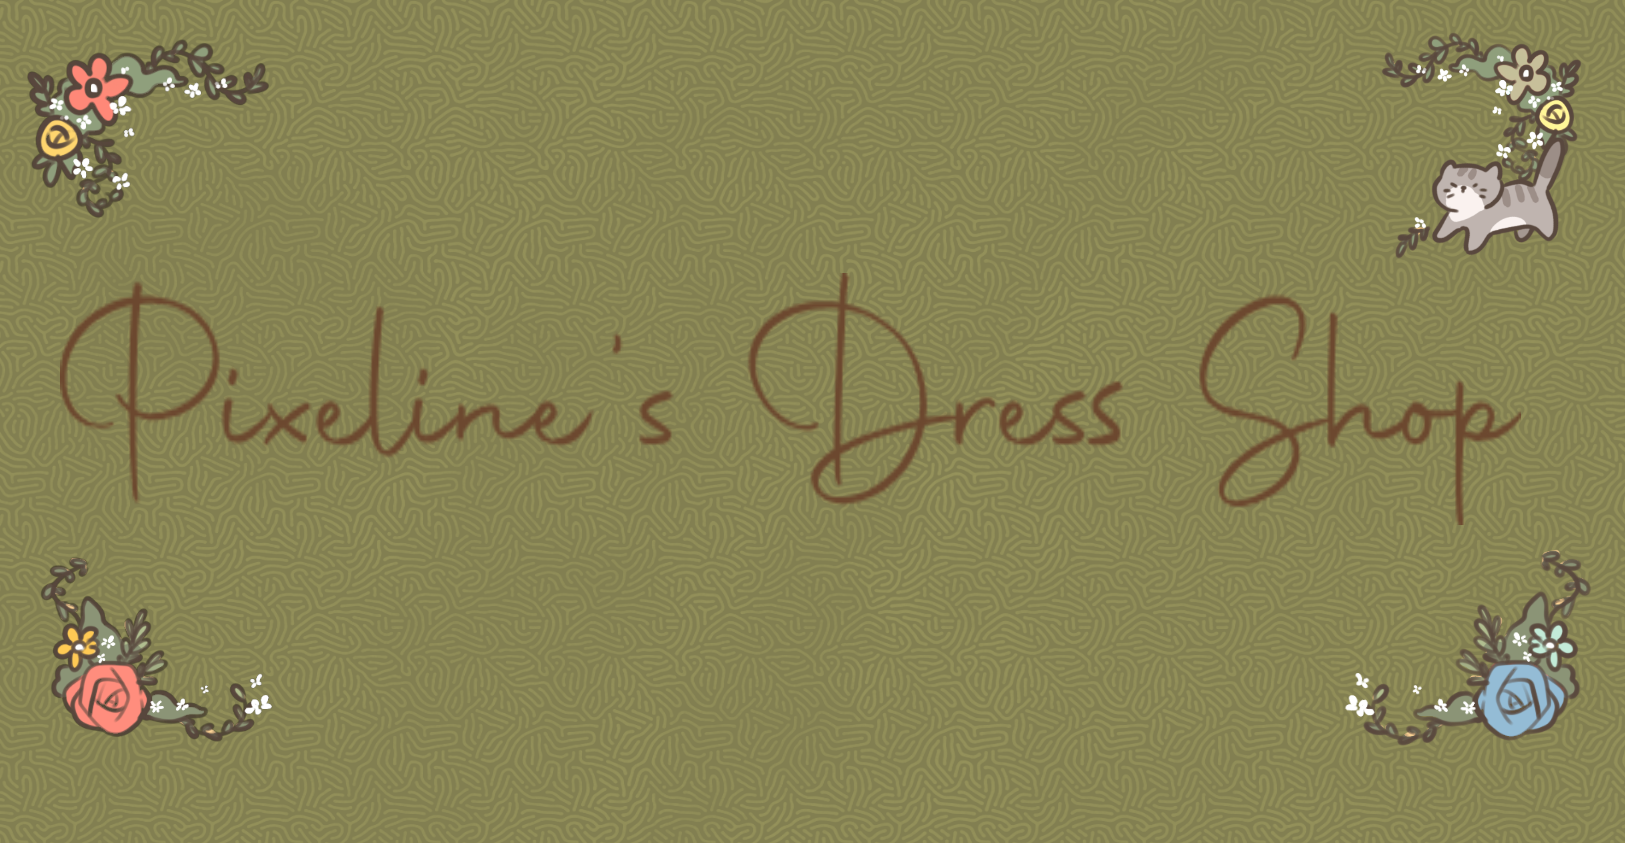 Pixeline's Dress Shop